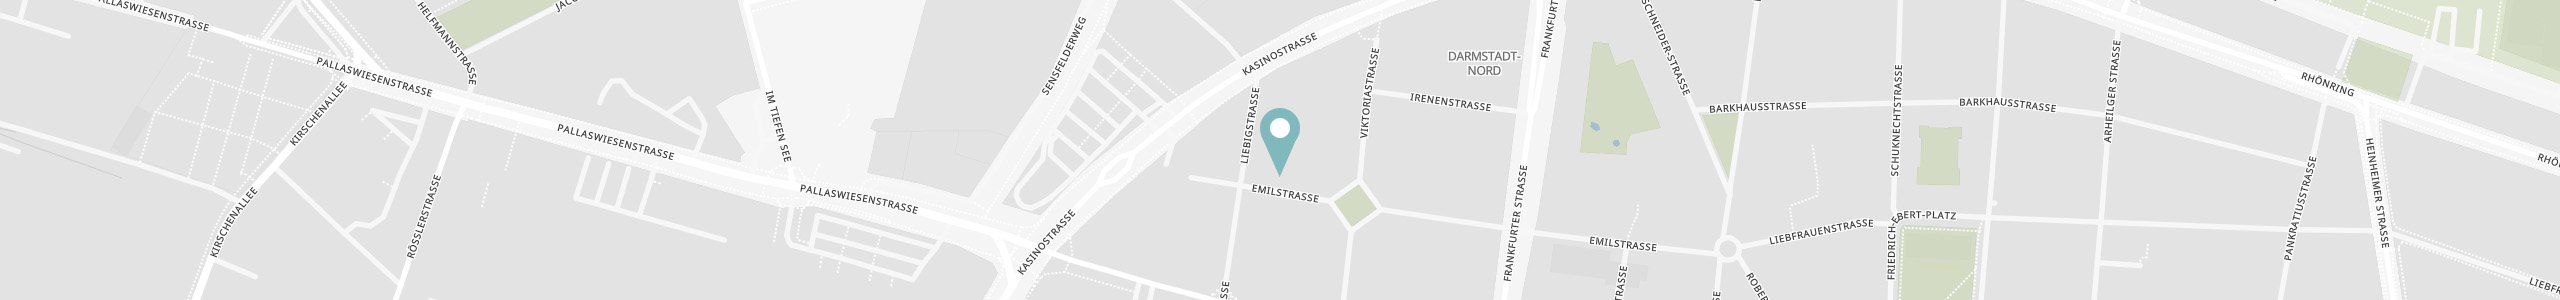 Karte von Darmstadt mit Standortmarker